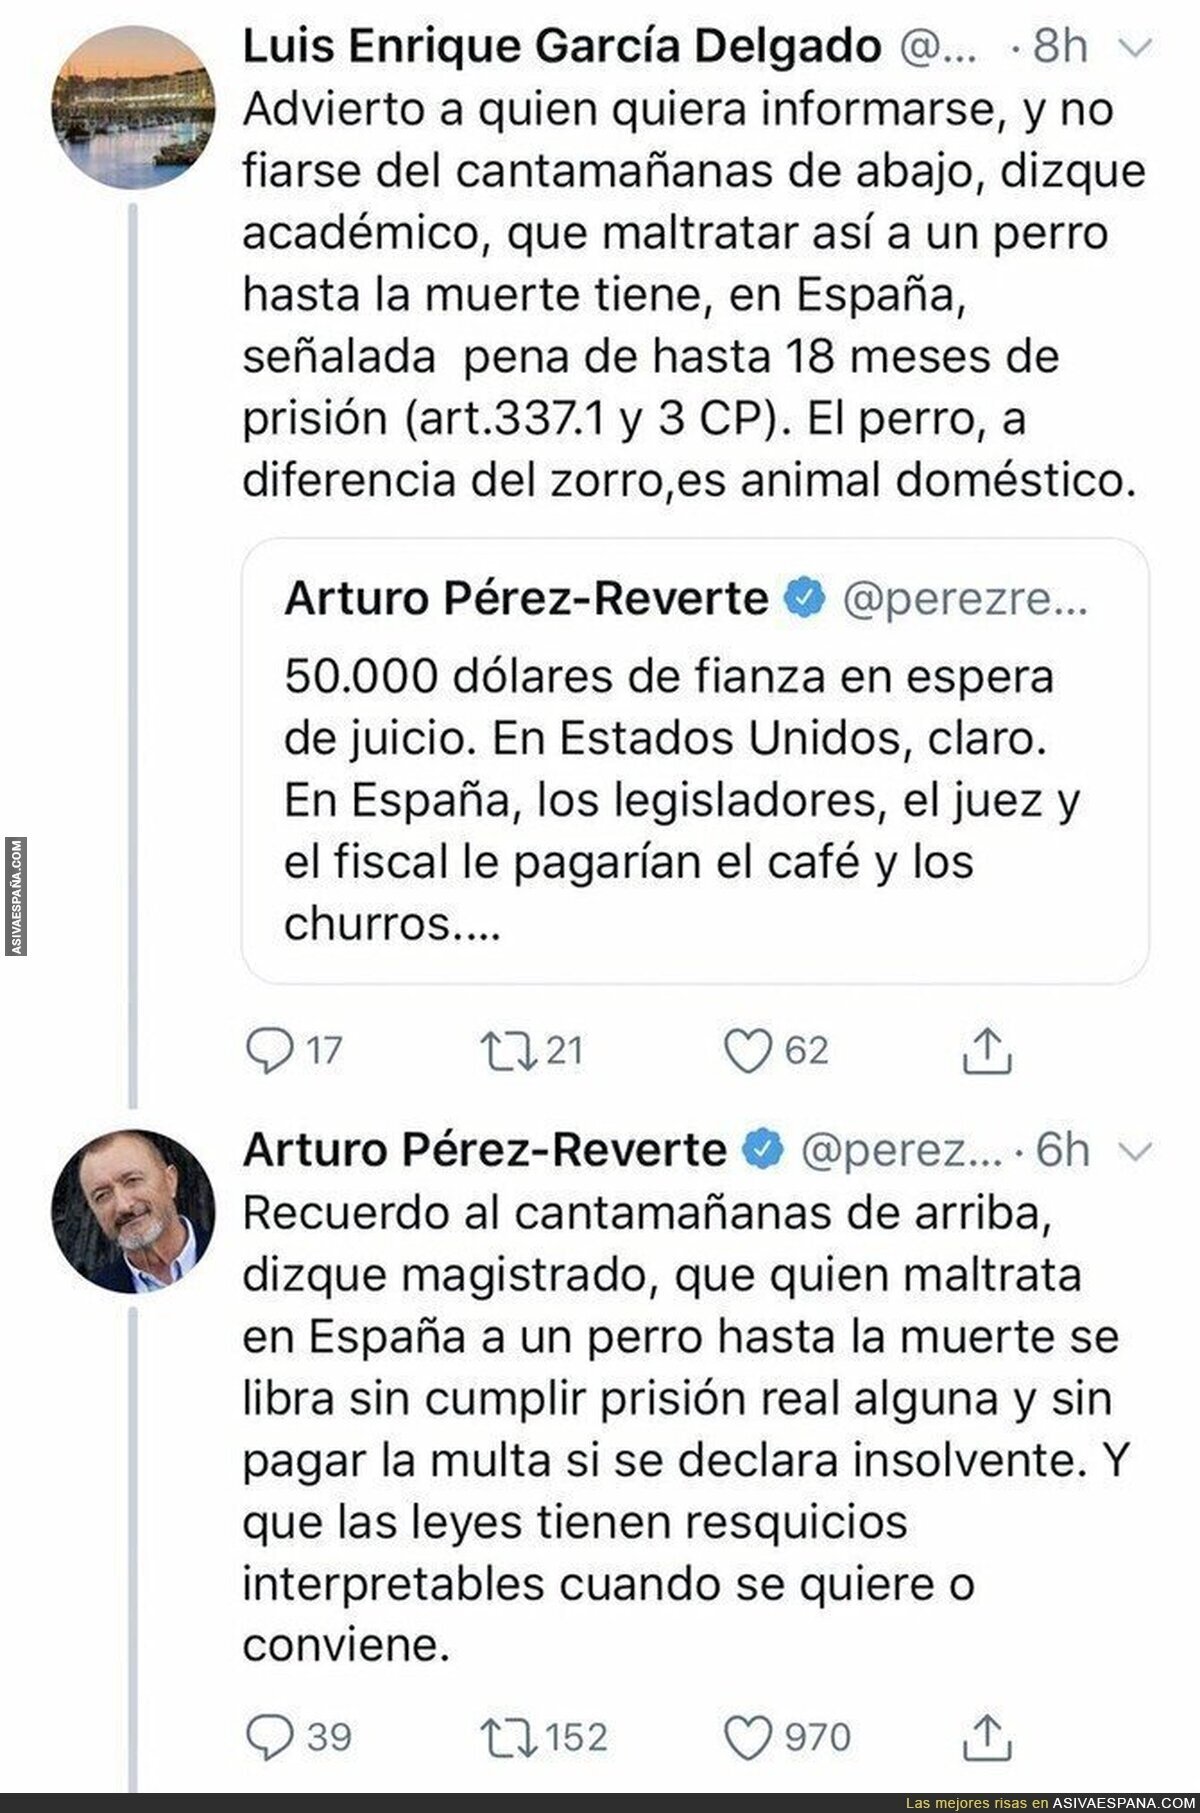 Arturo Pérez-Reverte repartiendo h*stias con el maltrato animal y las penas que se imponen